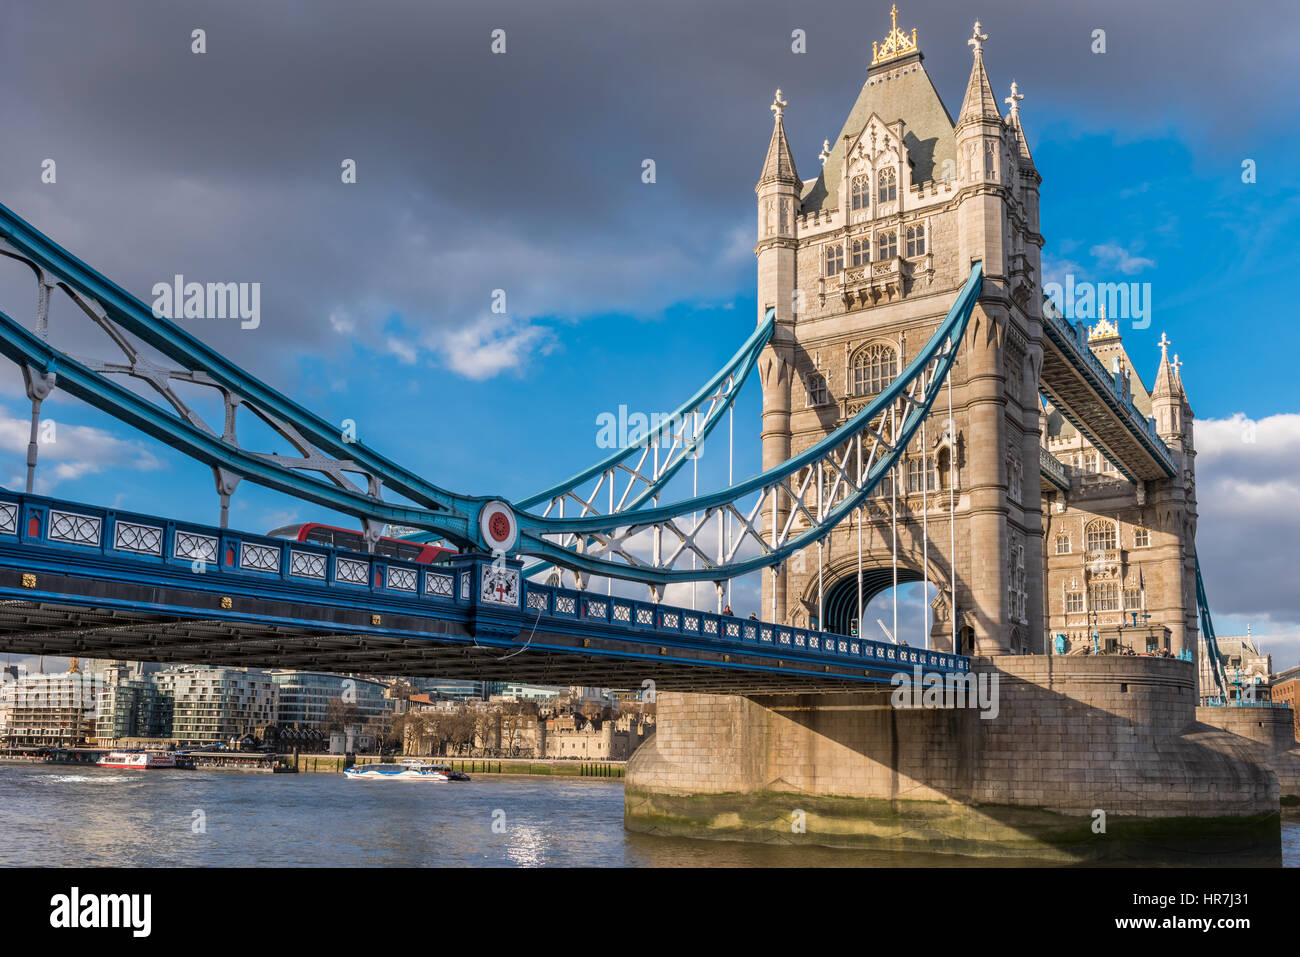 Die Tower Bridge leuchtet in der Sonne an einem ruhigen aber kalten Tag in der Hauptstadt City of London. Stockfoto